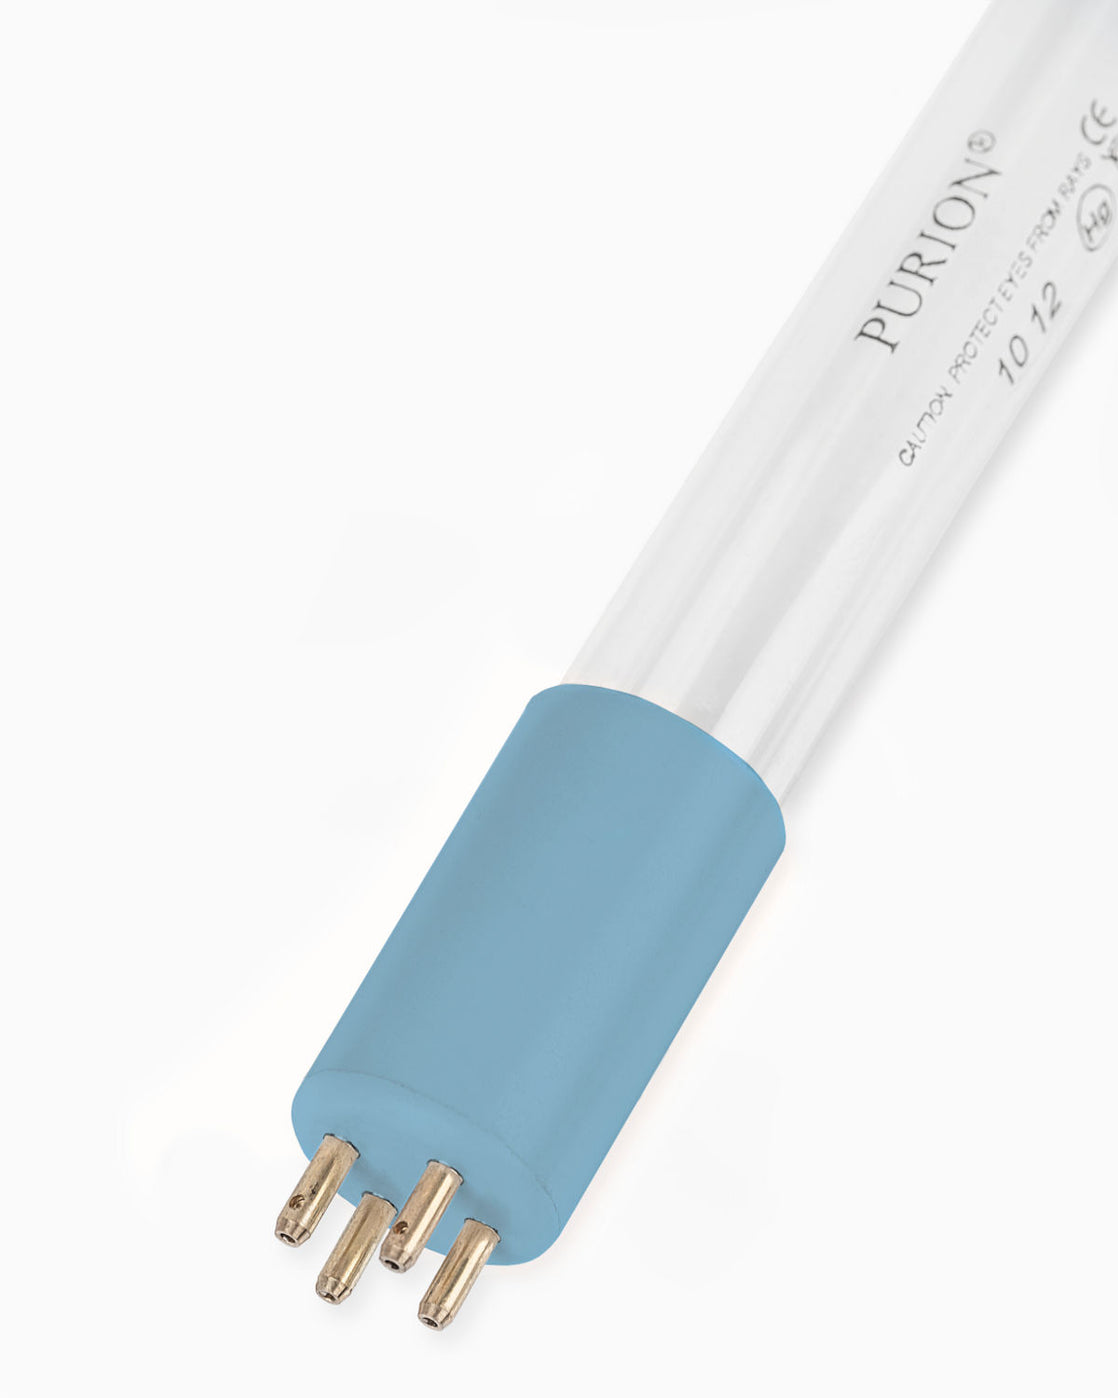 Eine blaue Lichtröhre, PURION UVC Lampe 39 W/3D, auf weißem Hintergrund.